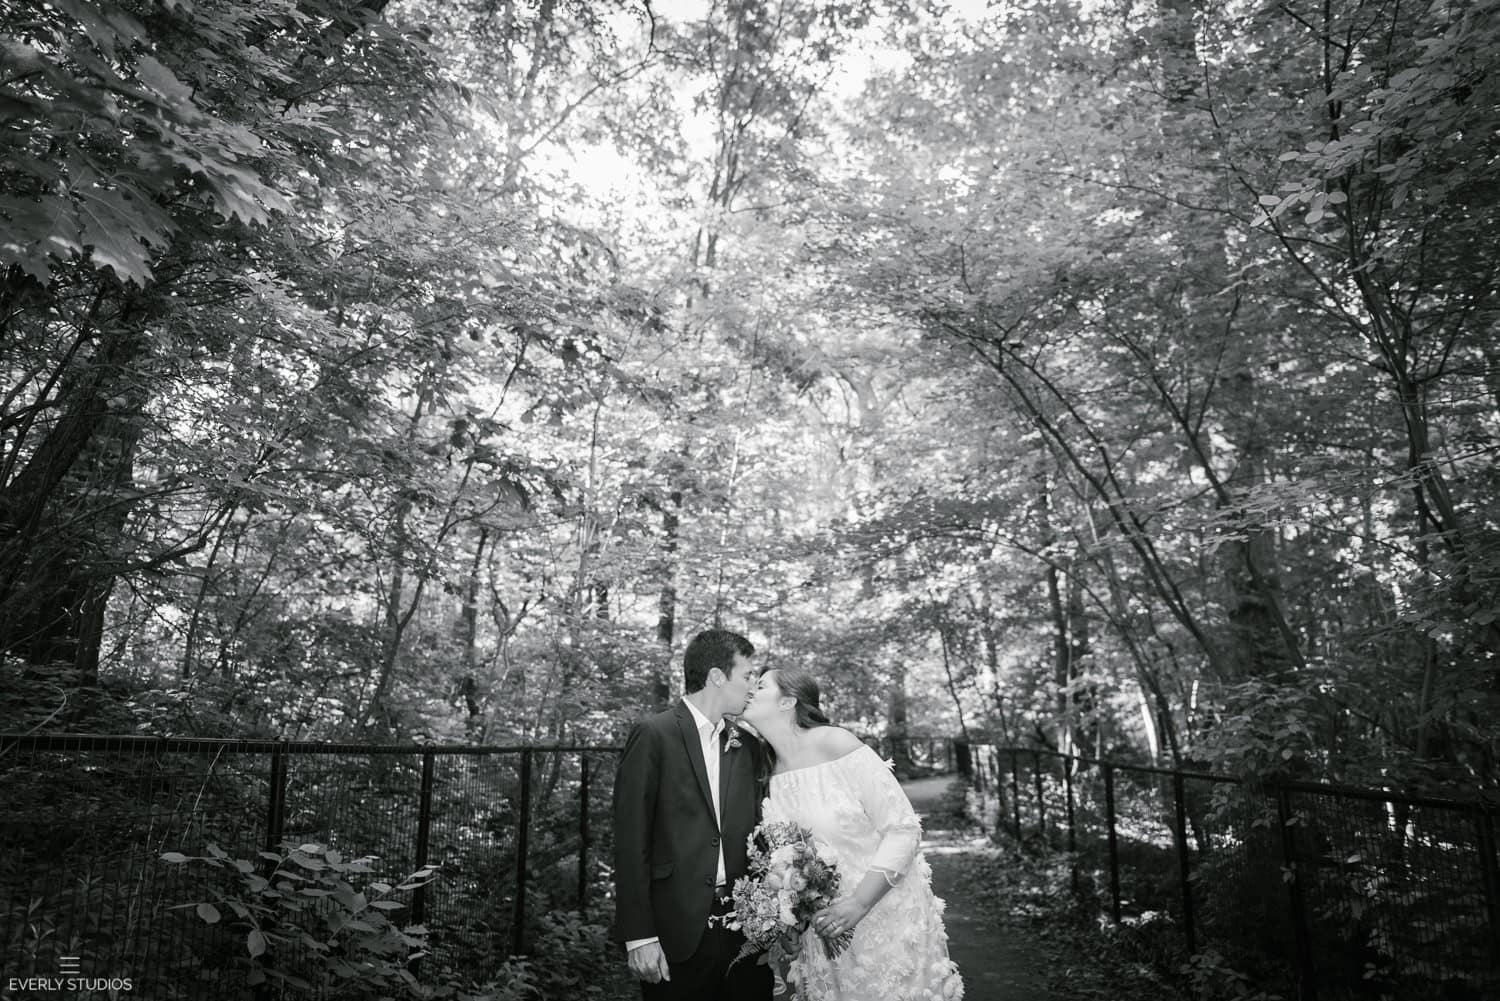 Prospect Park wedding photos in Brooklyn. Photos by Brooklyn wedding photographer Everly Studios, www.everlystudios.com